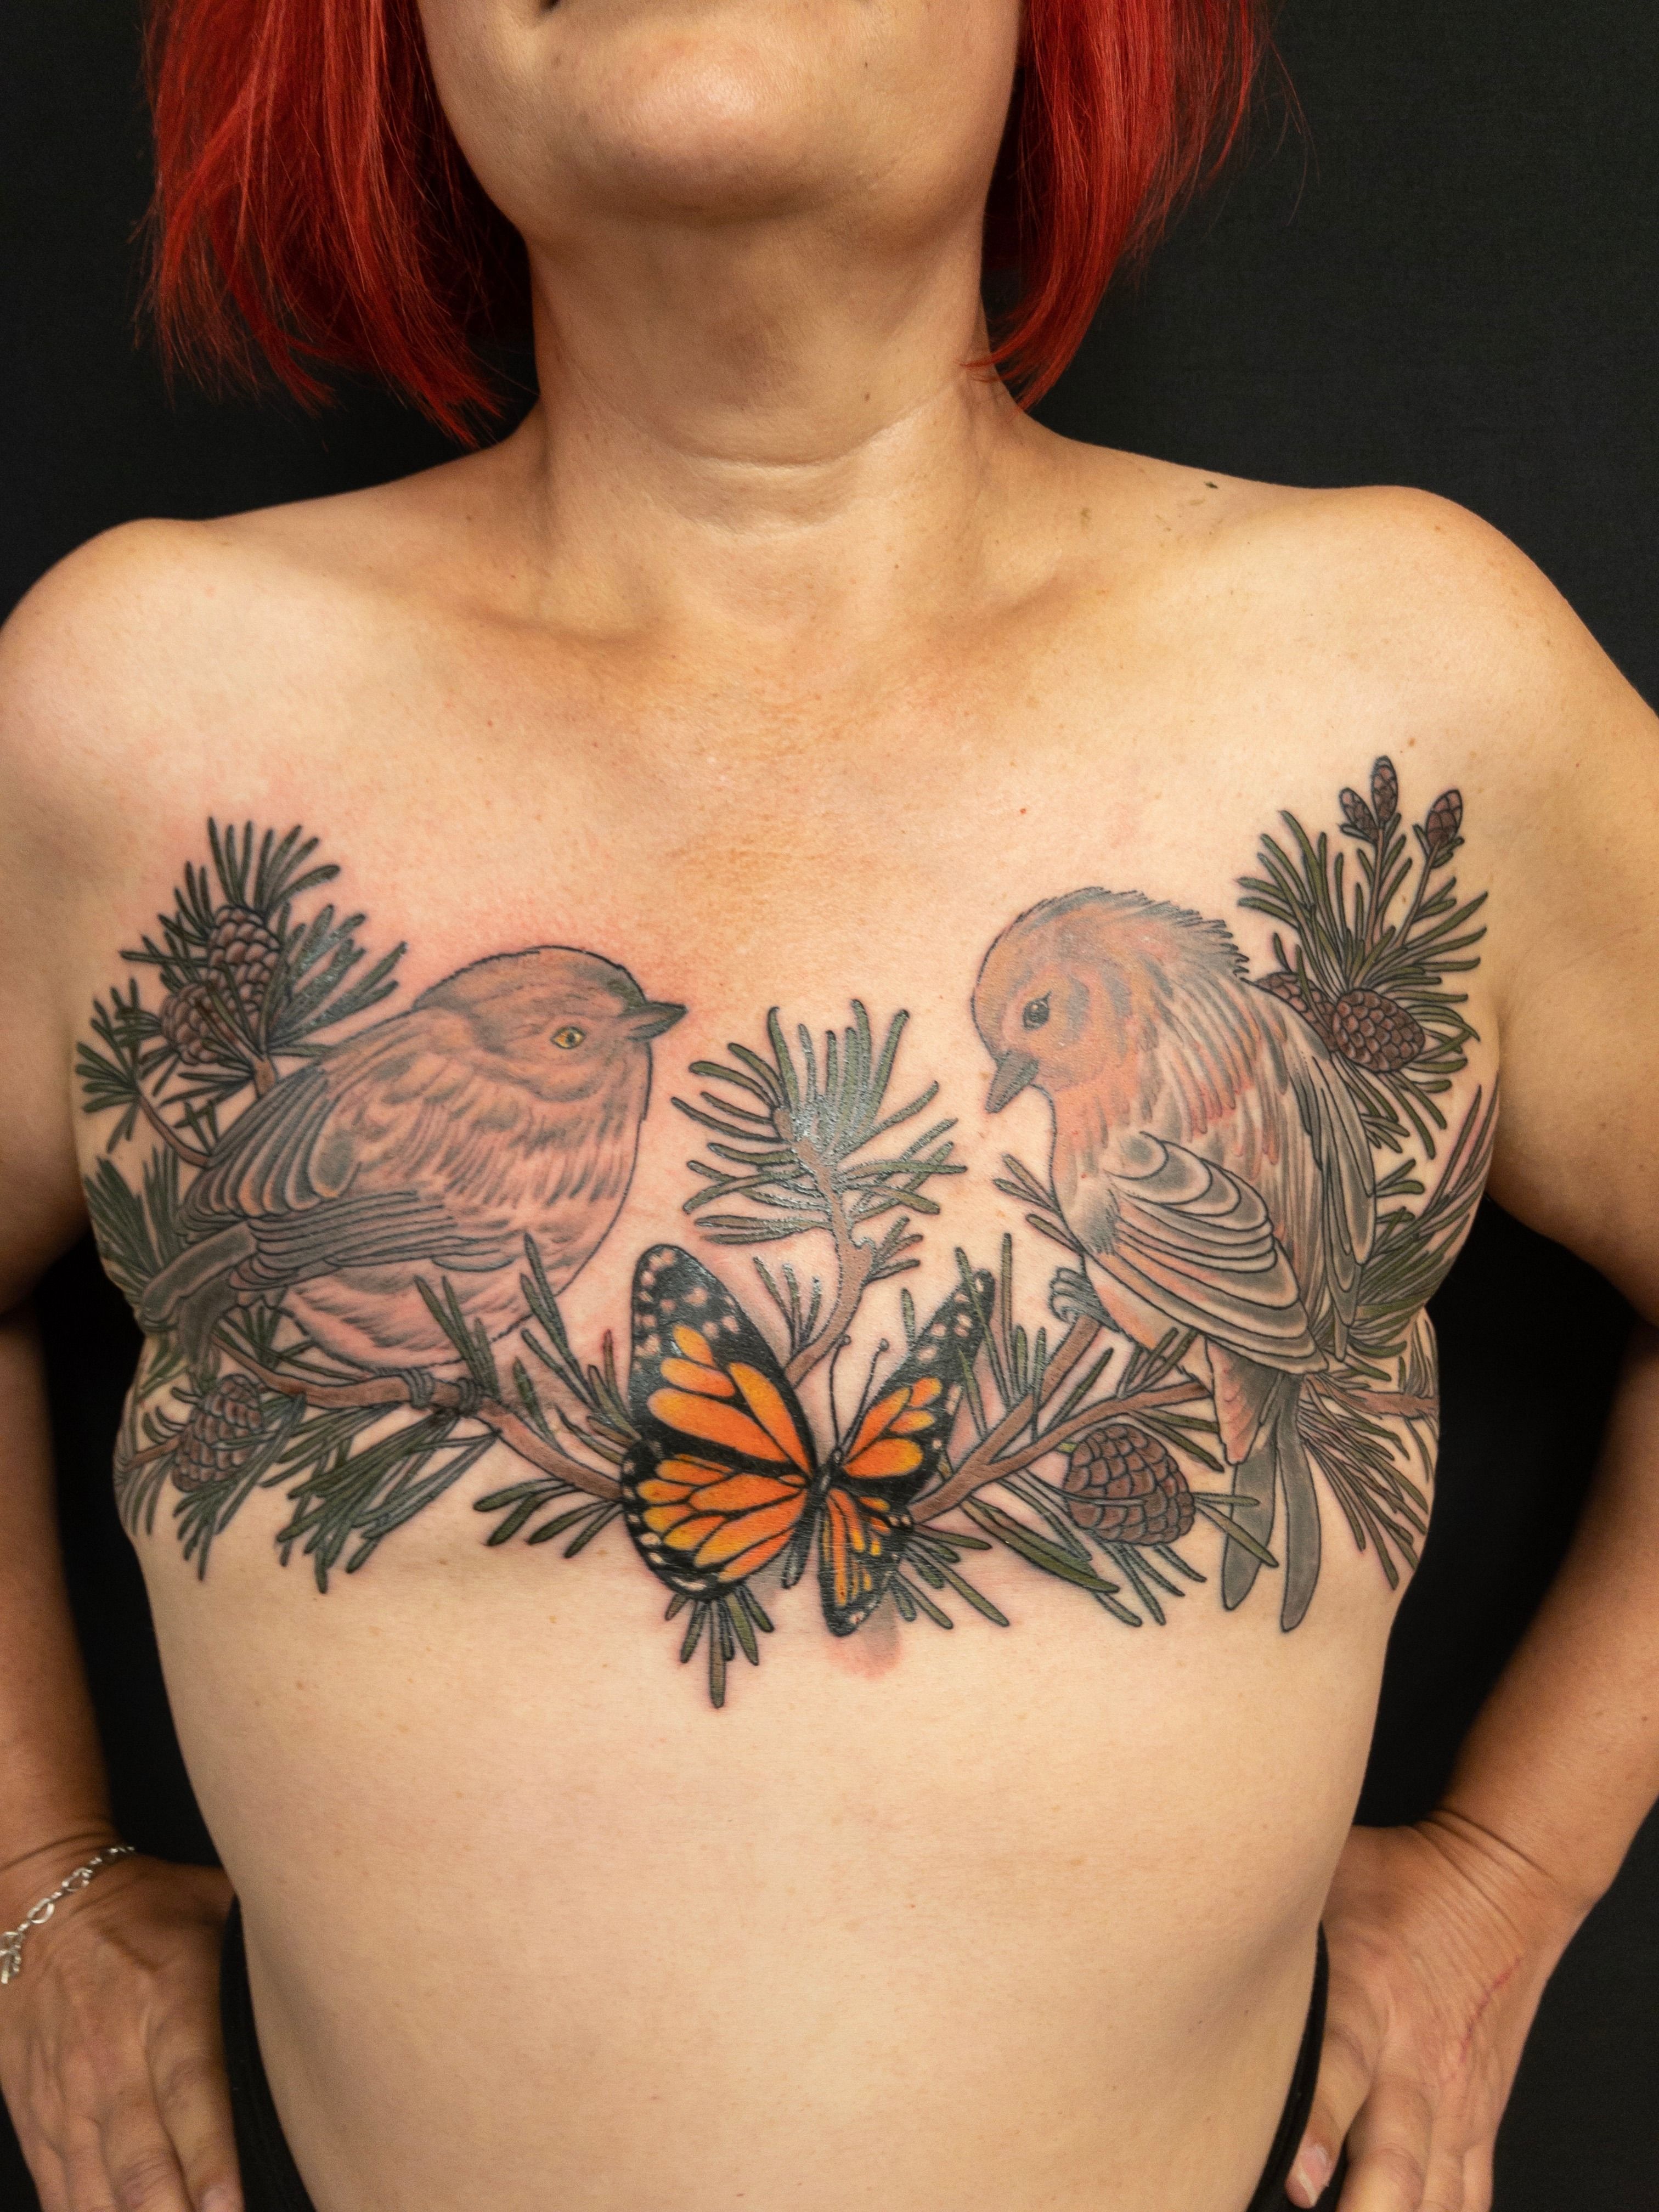 Tattoo uploaded by Anatta Vela • Mastectomy tattoo by Shane Wallin  #ShaneWallin #mastectomytattoos #mastectomy #mastectomyscarcoverup  #scarcoveruptattoo • Tattoodo